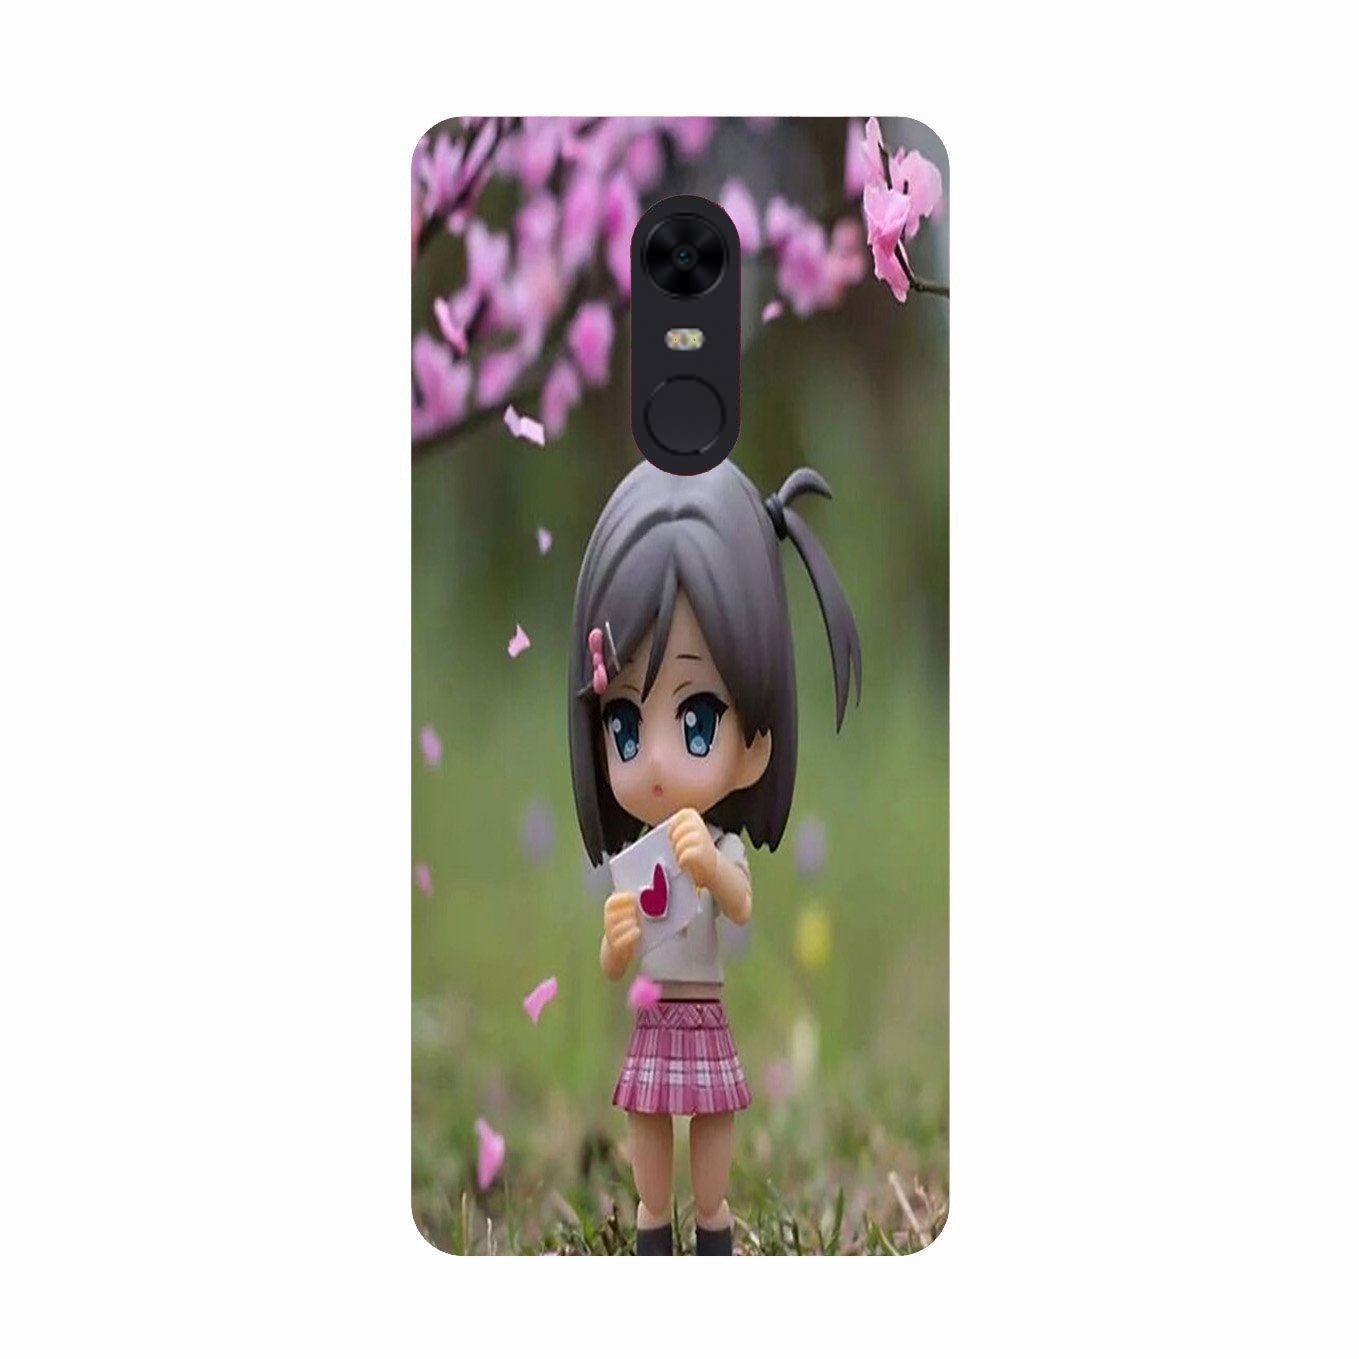 Cute Girl Case for Redmi Note 4